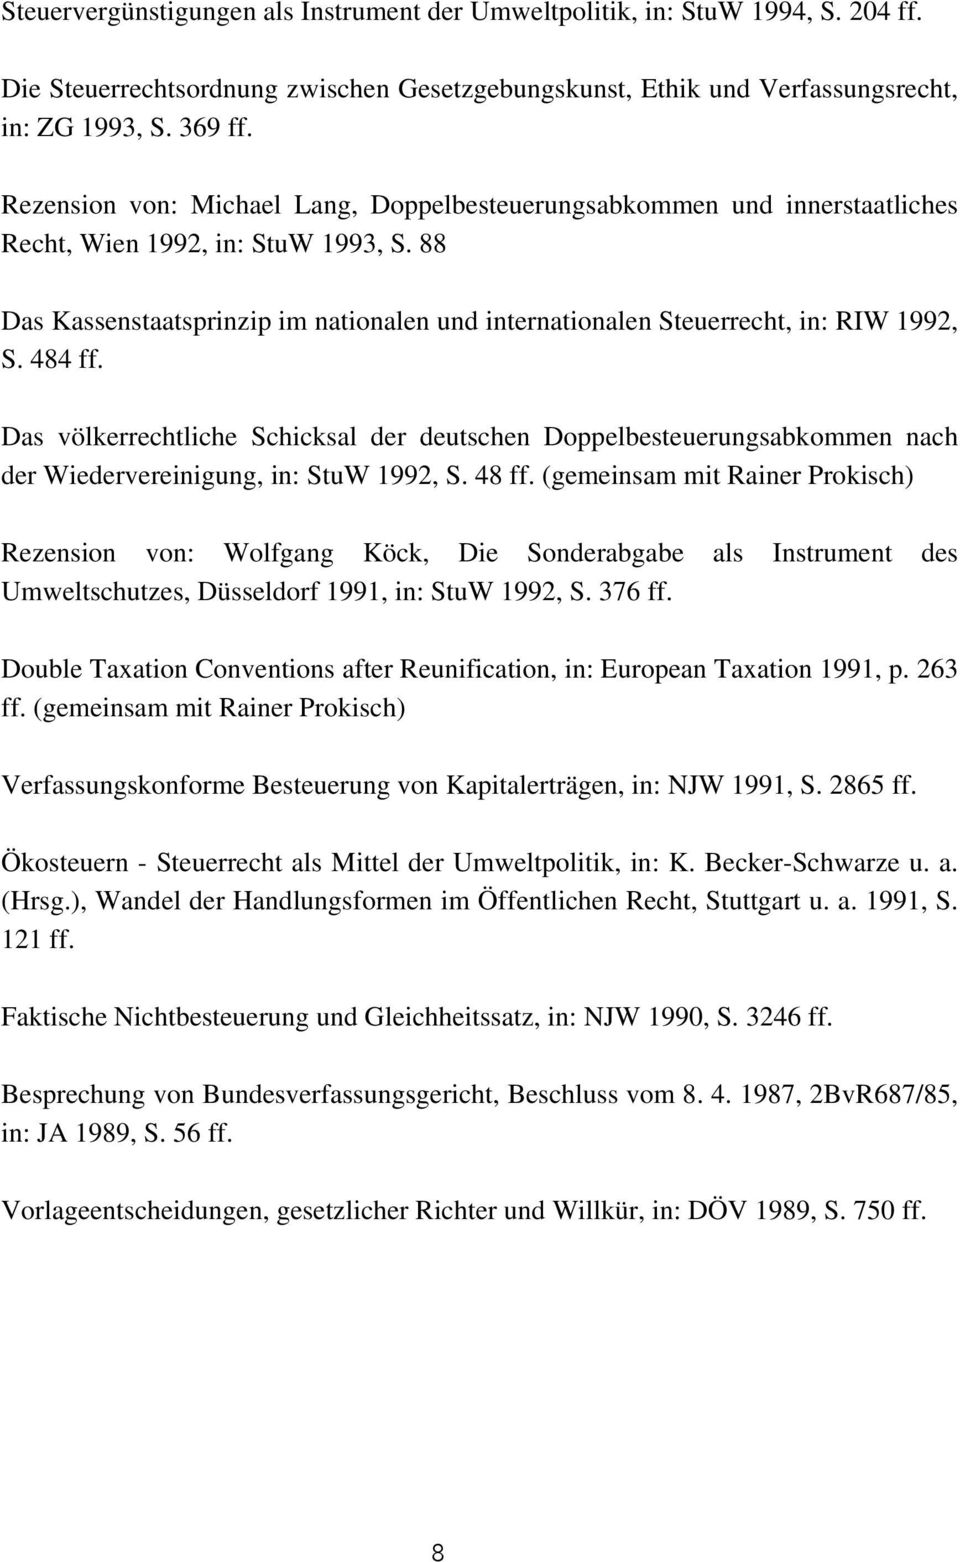 88 Das Kassenstaatsprinzip im nationalen und internationalen Steuerrecht, in: RIW 1992, S. 484 ff.